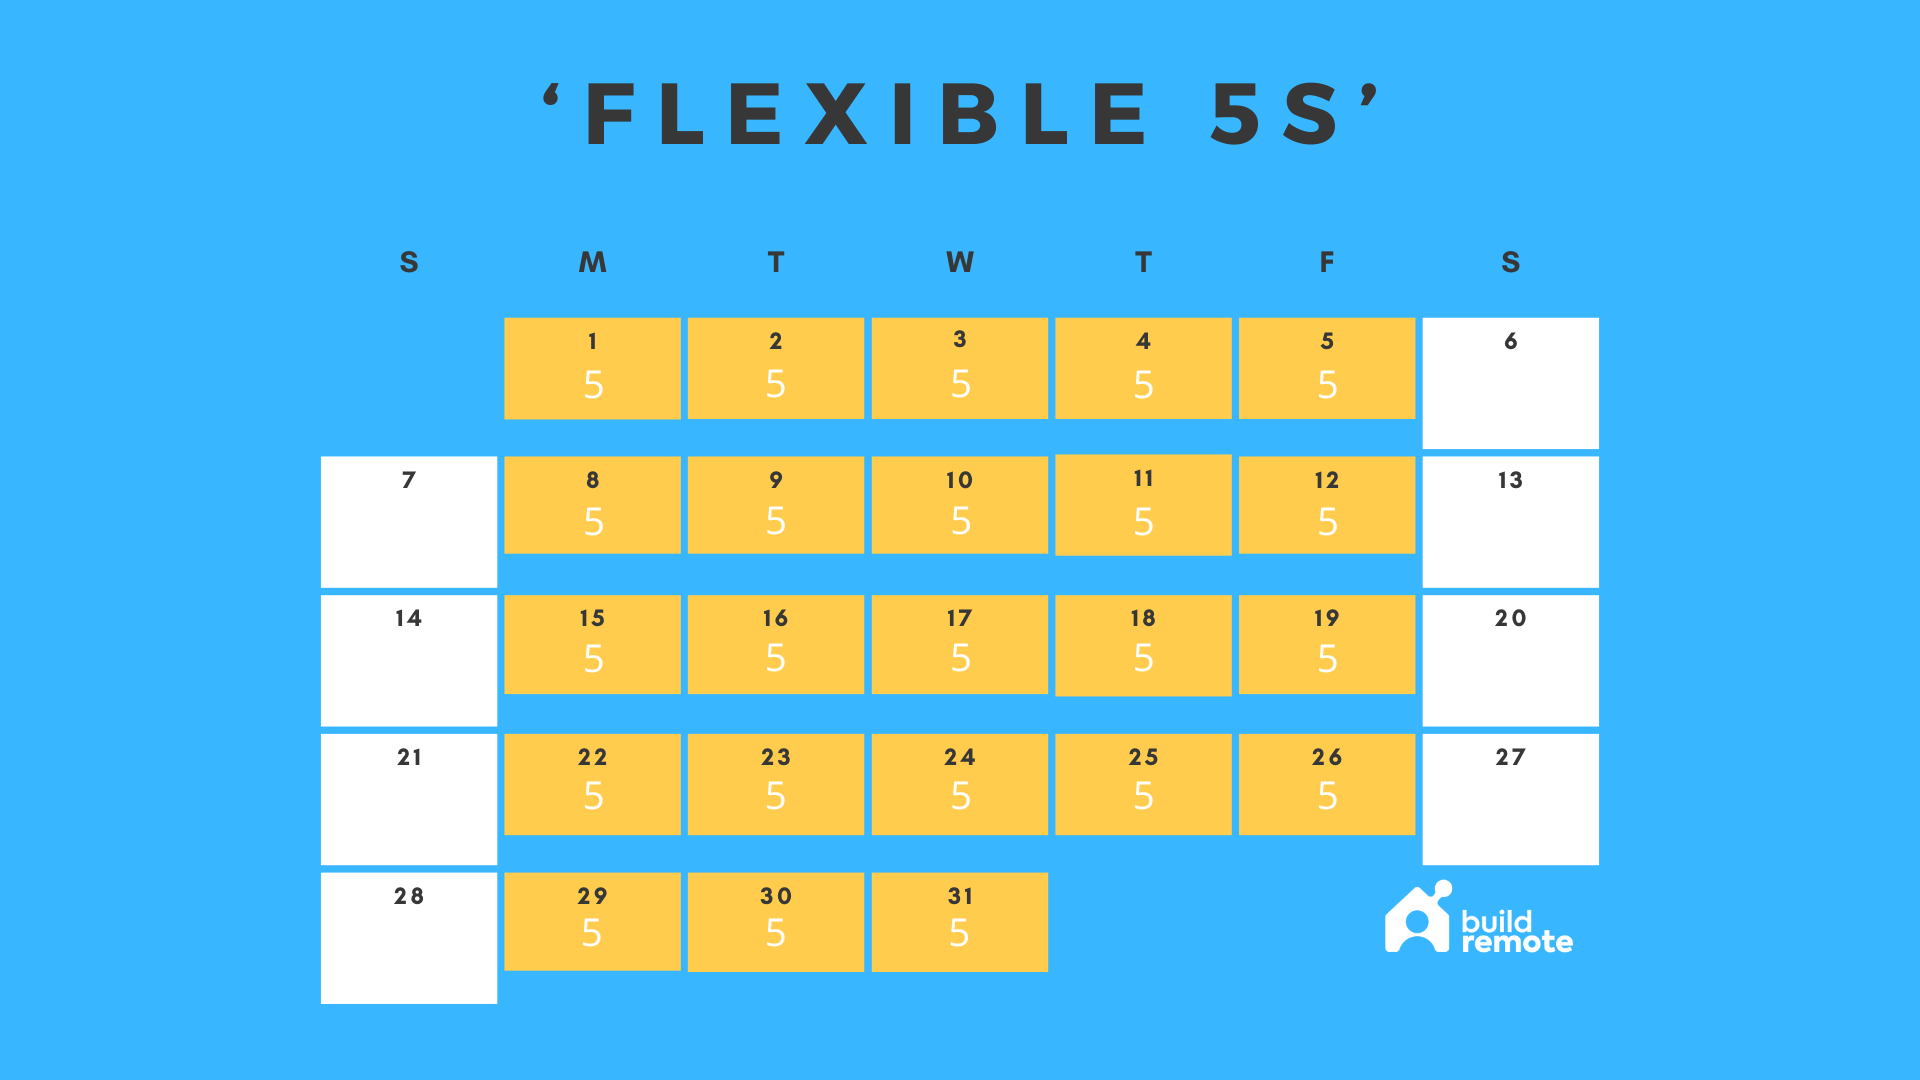 Flexible 25 hour work week